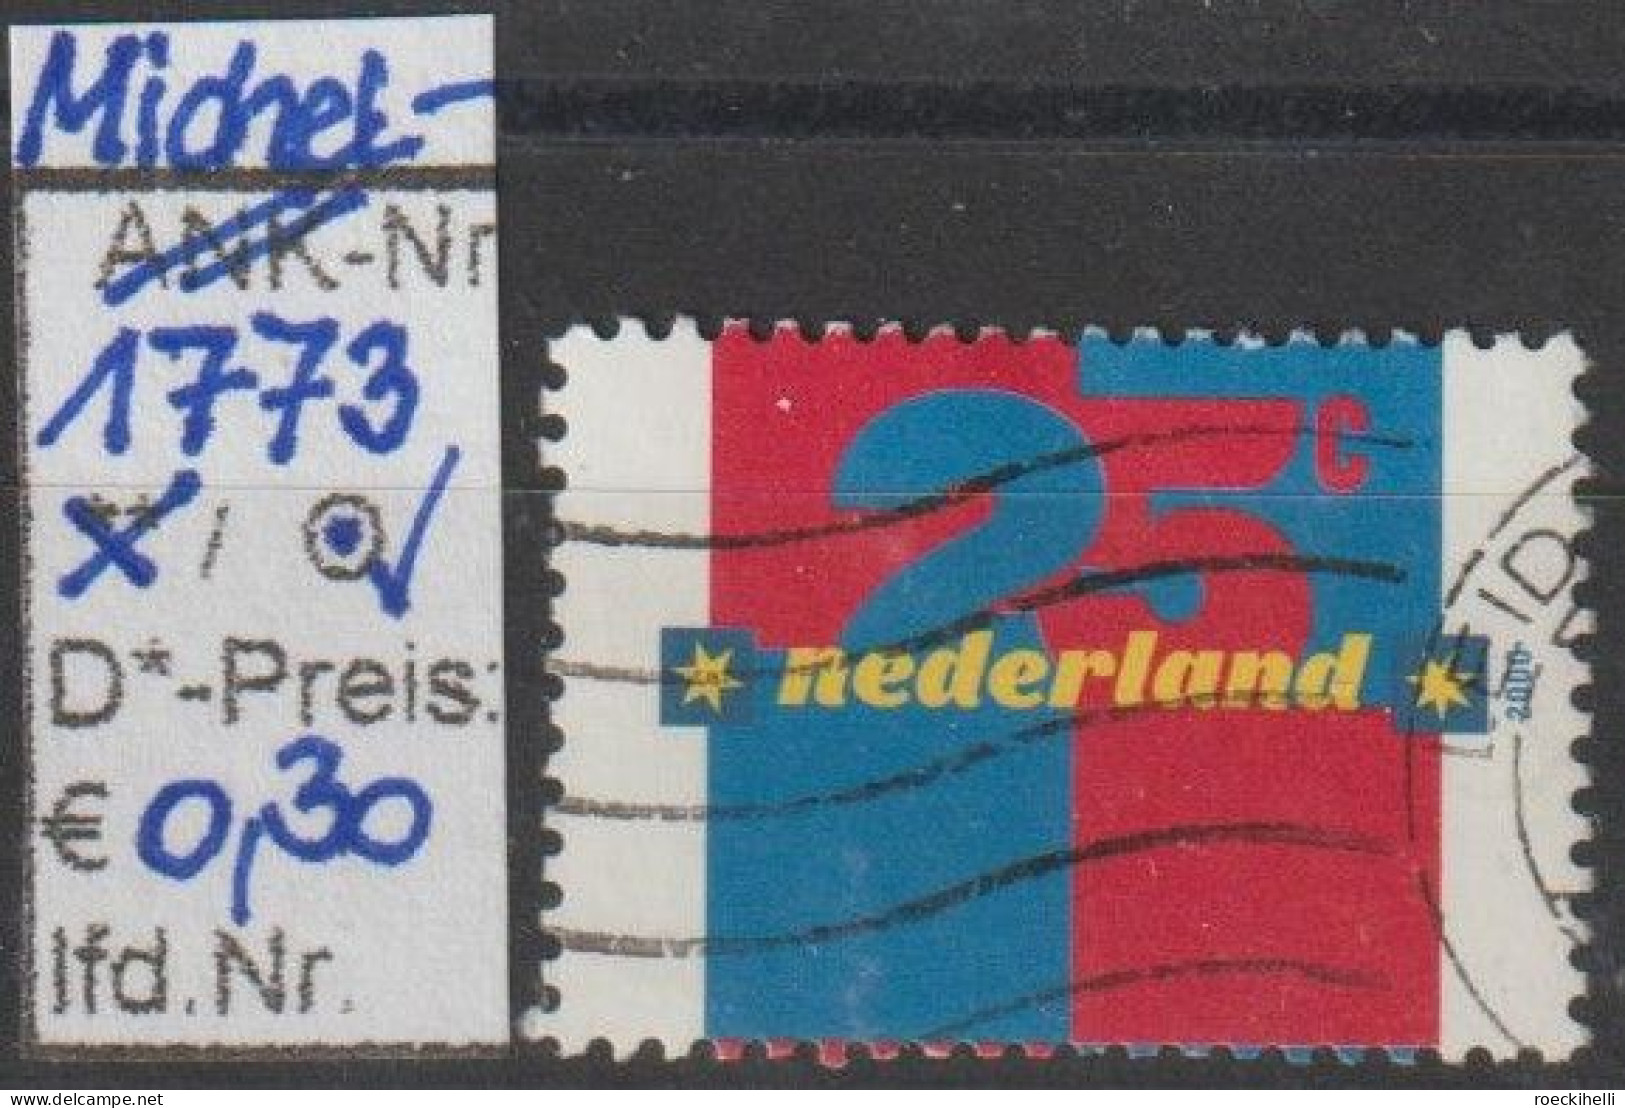 2000 - NIEDERLANDE - FM/DM "Ziffern" 25 C Mehrf. - S. Scan  (1773o Nl) - Usati